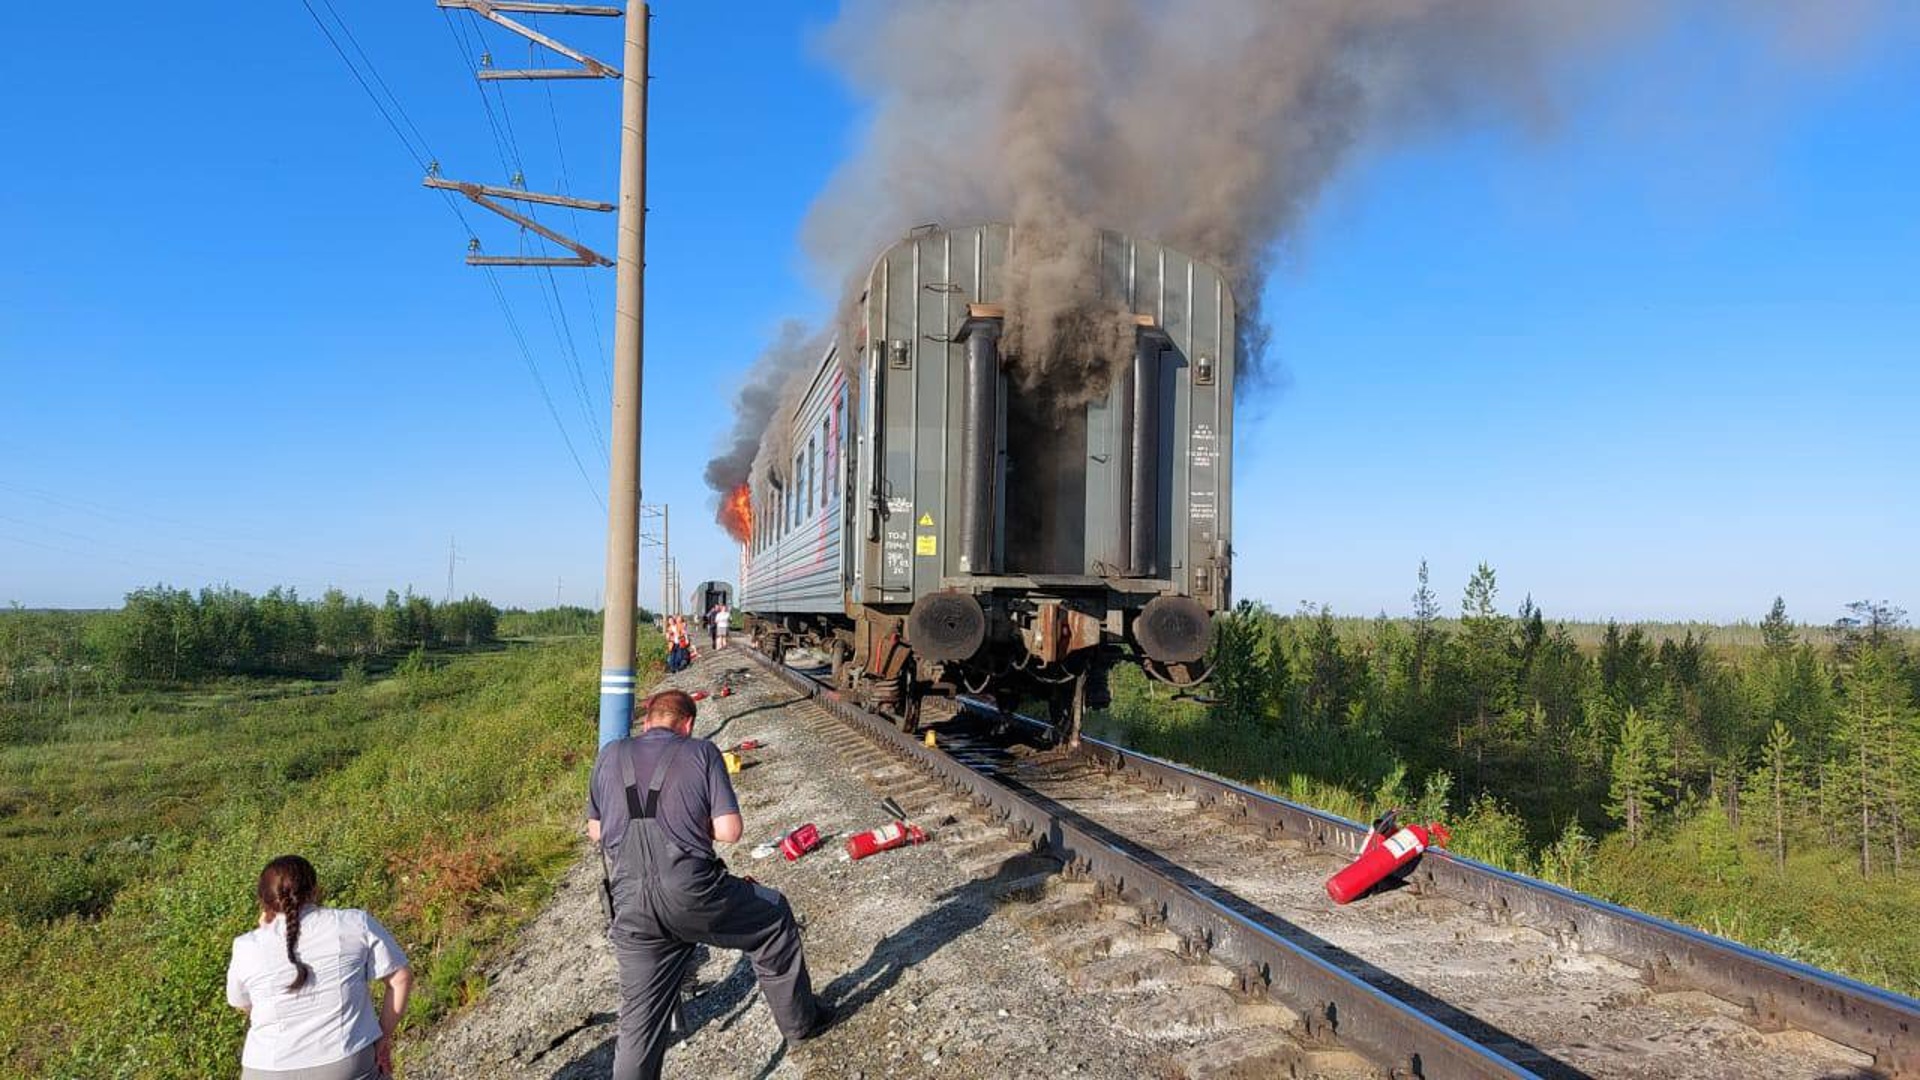 Фото пожара в поезде